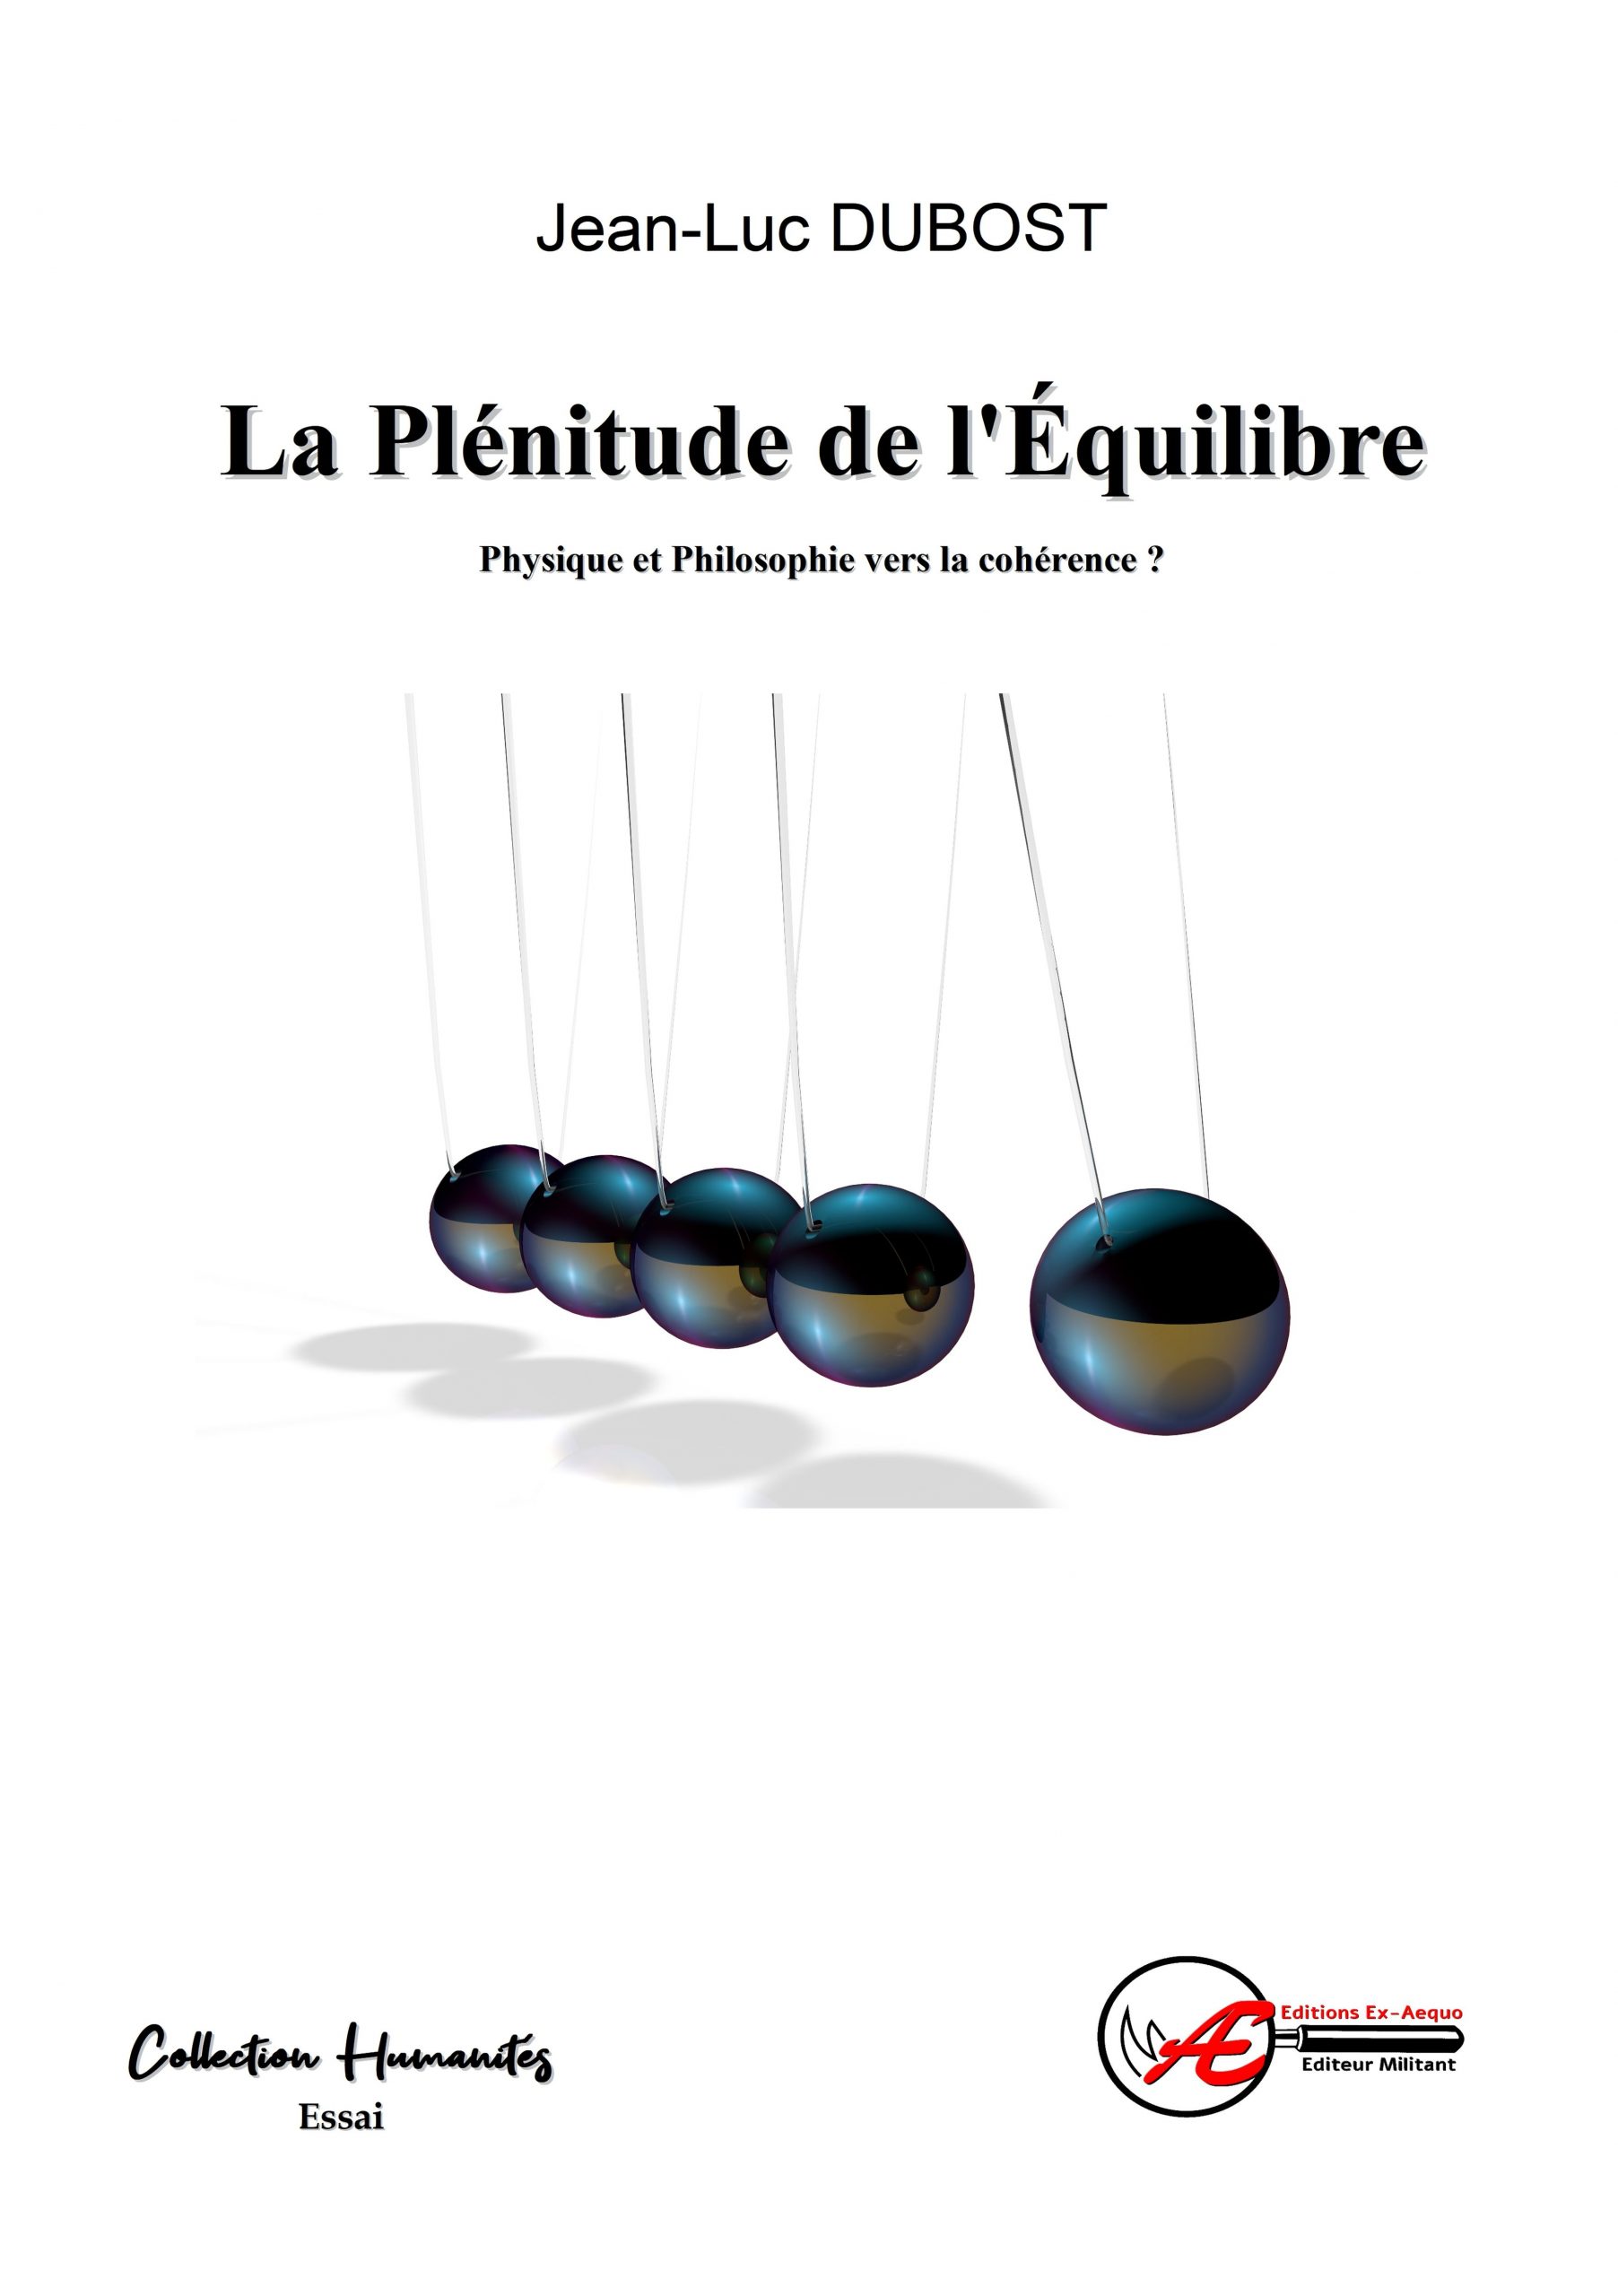 You are currently viewing La plénitude de l’équilibre, de Jean-Luc Dubost